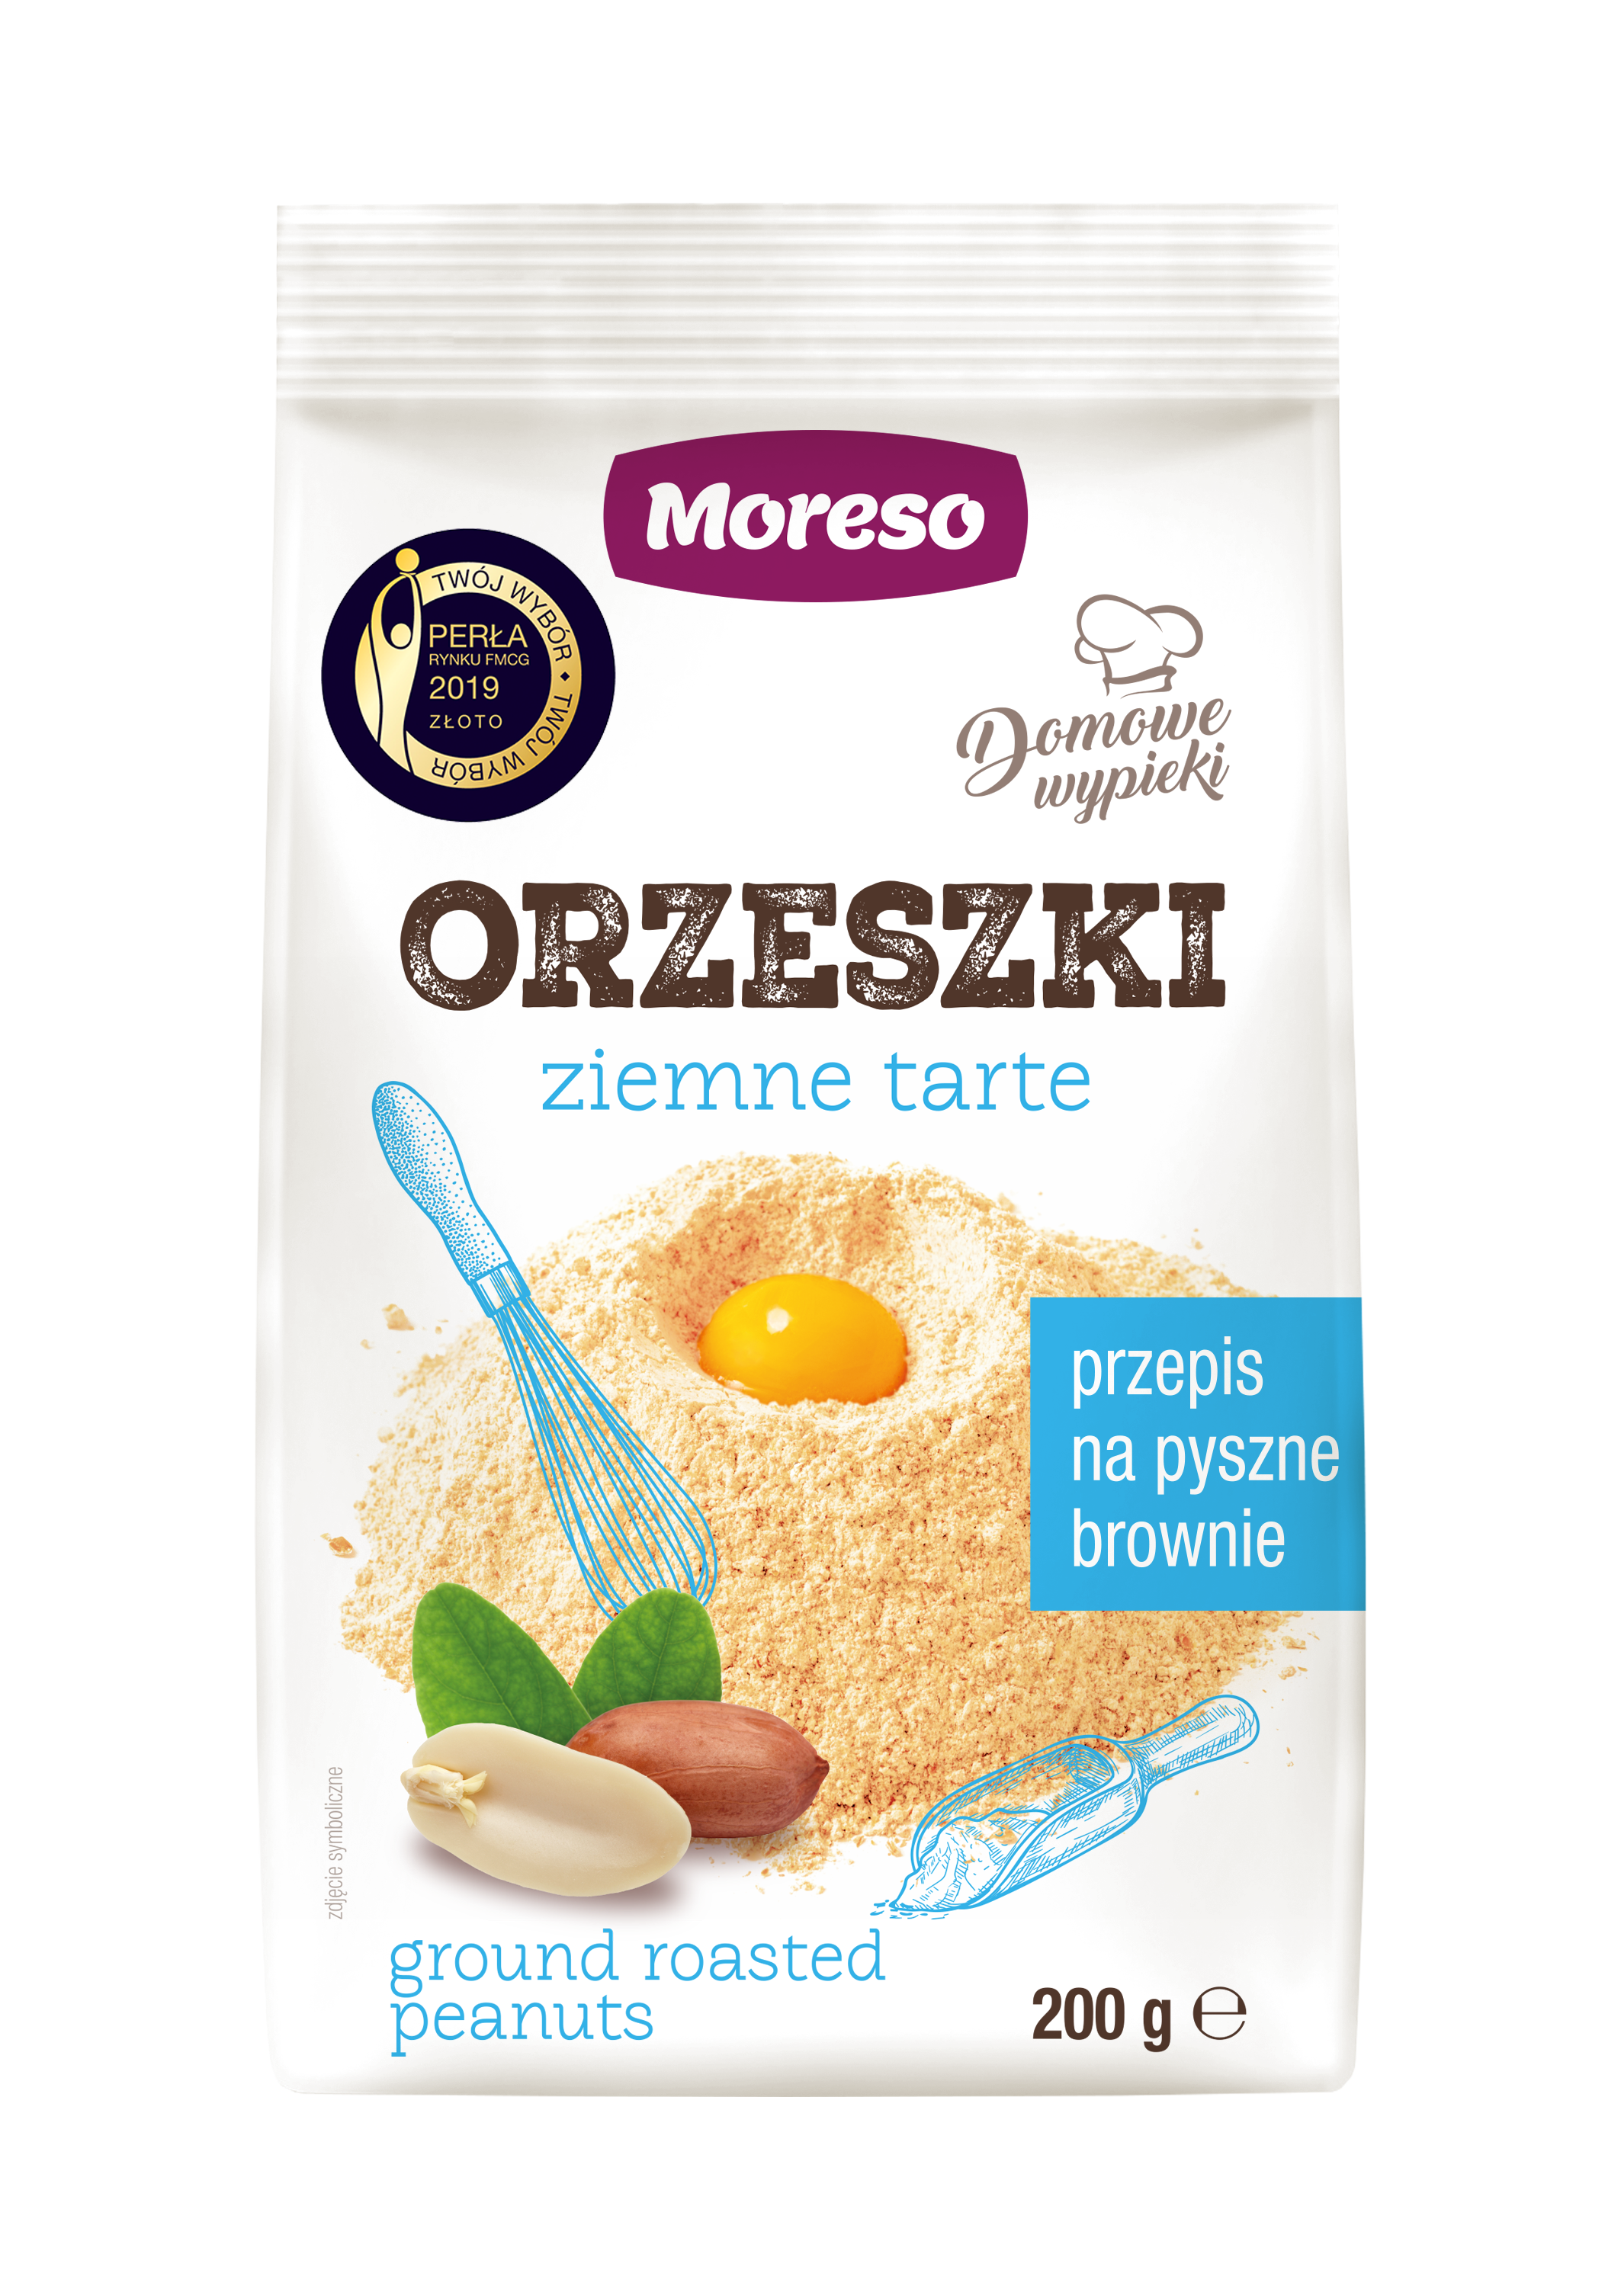 Zobacz ORZESZKI ZIEMNE TARTE  na Moreso.pl!